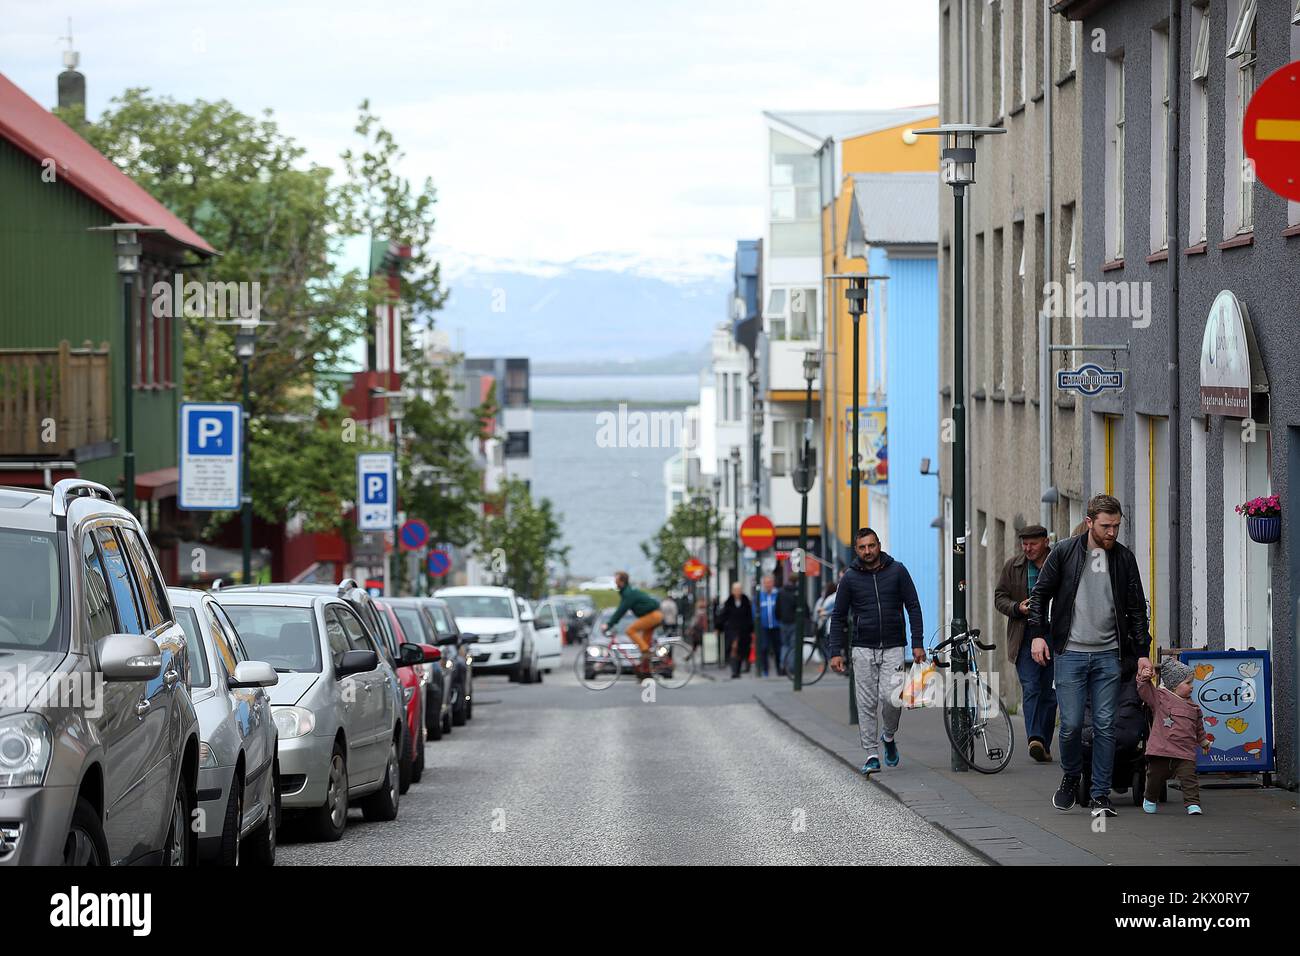 11.06.2017., Reykjavik, Islanda - Reykjavik è la capitale e la città più  grande dell'Islanda. Ha una latitudine di 64°08' N, che la rende la  capitale più settentrionale del mondo di uno stato